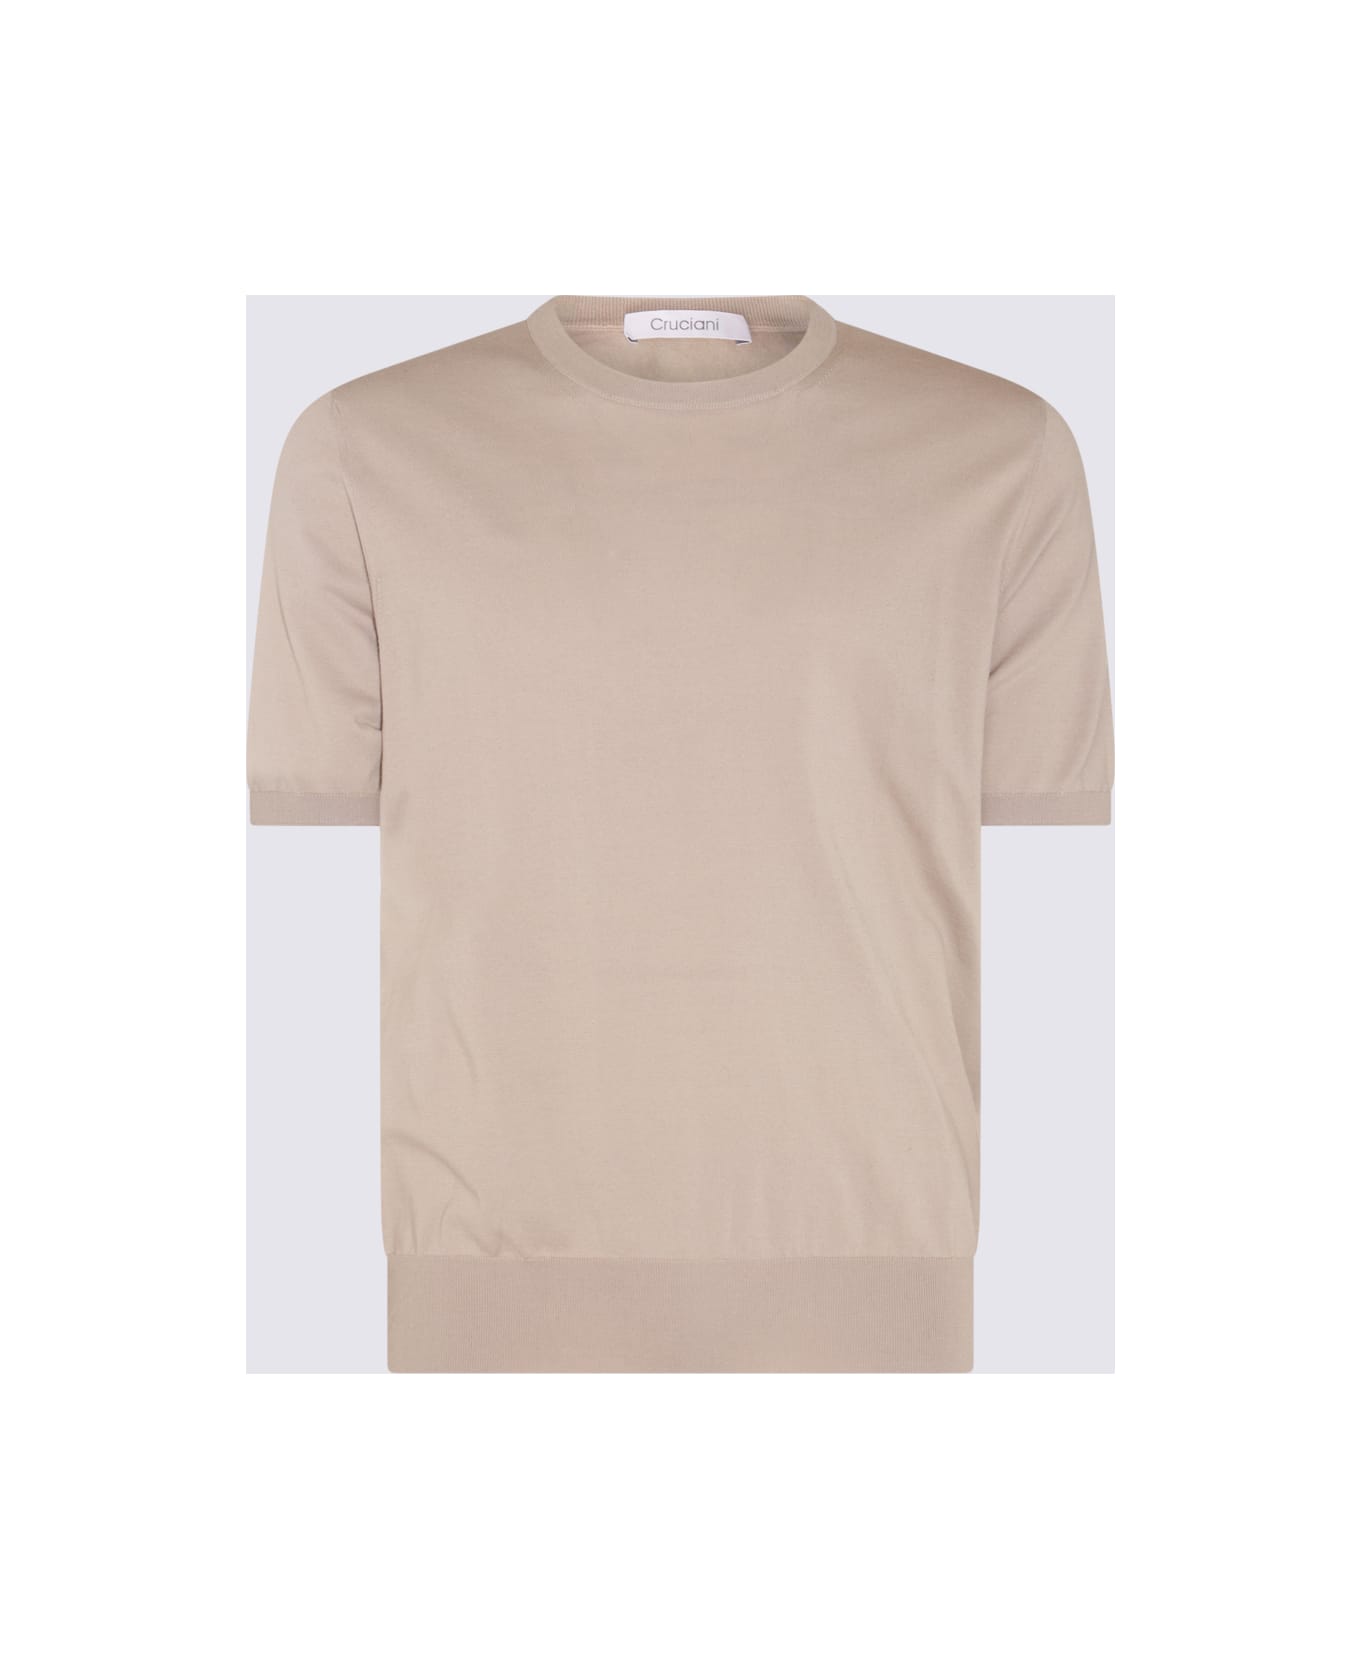 Cruciani Camel Cotton T-shirt - Camel